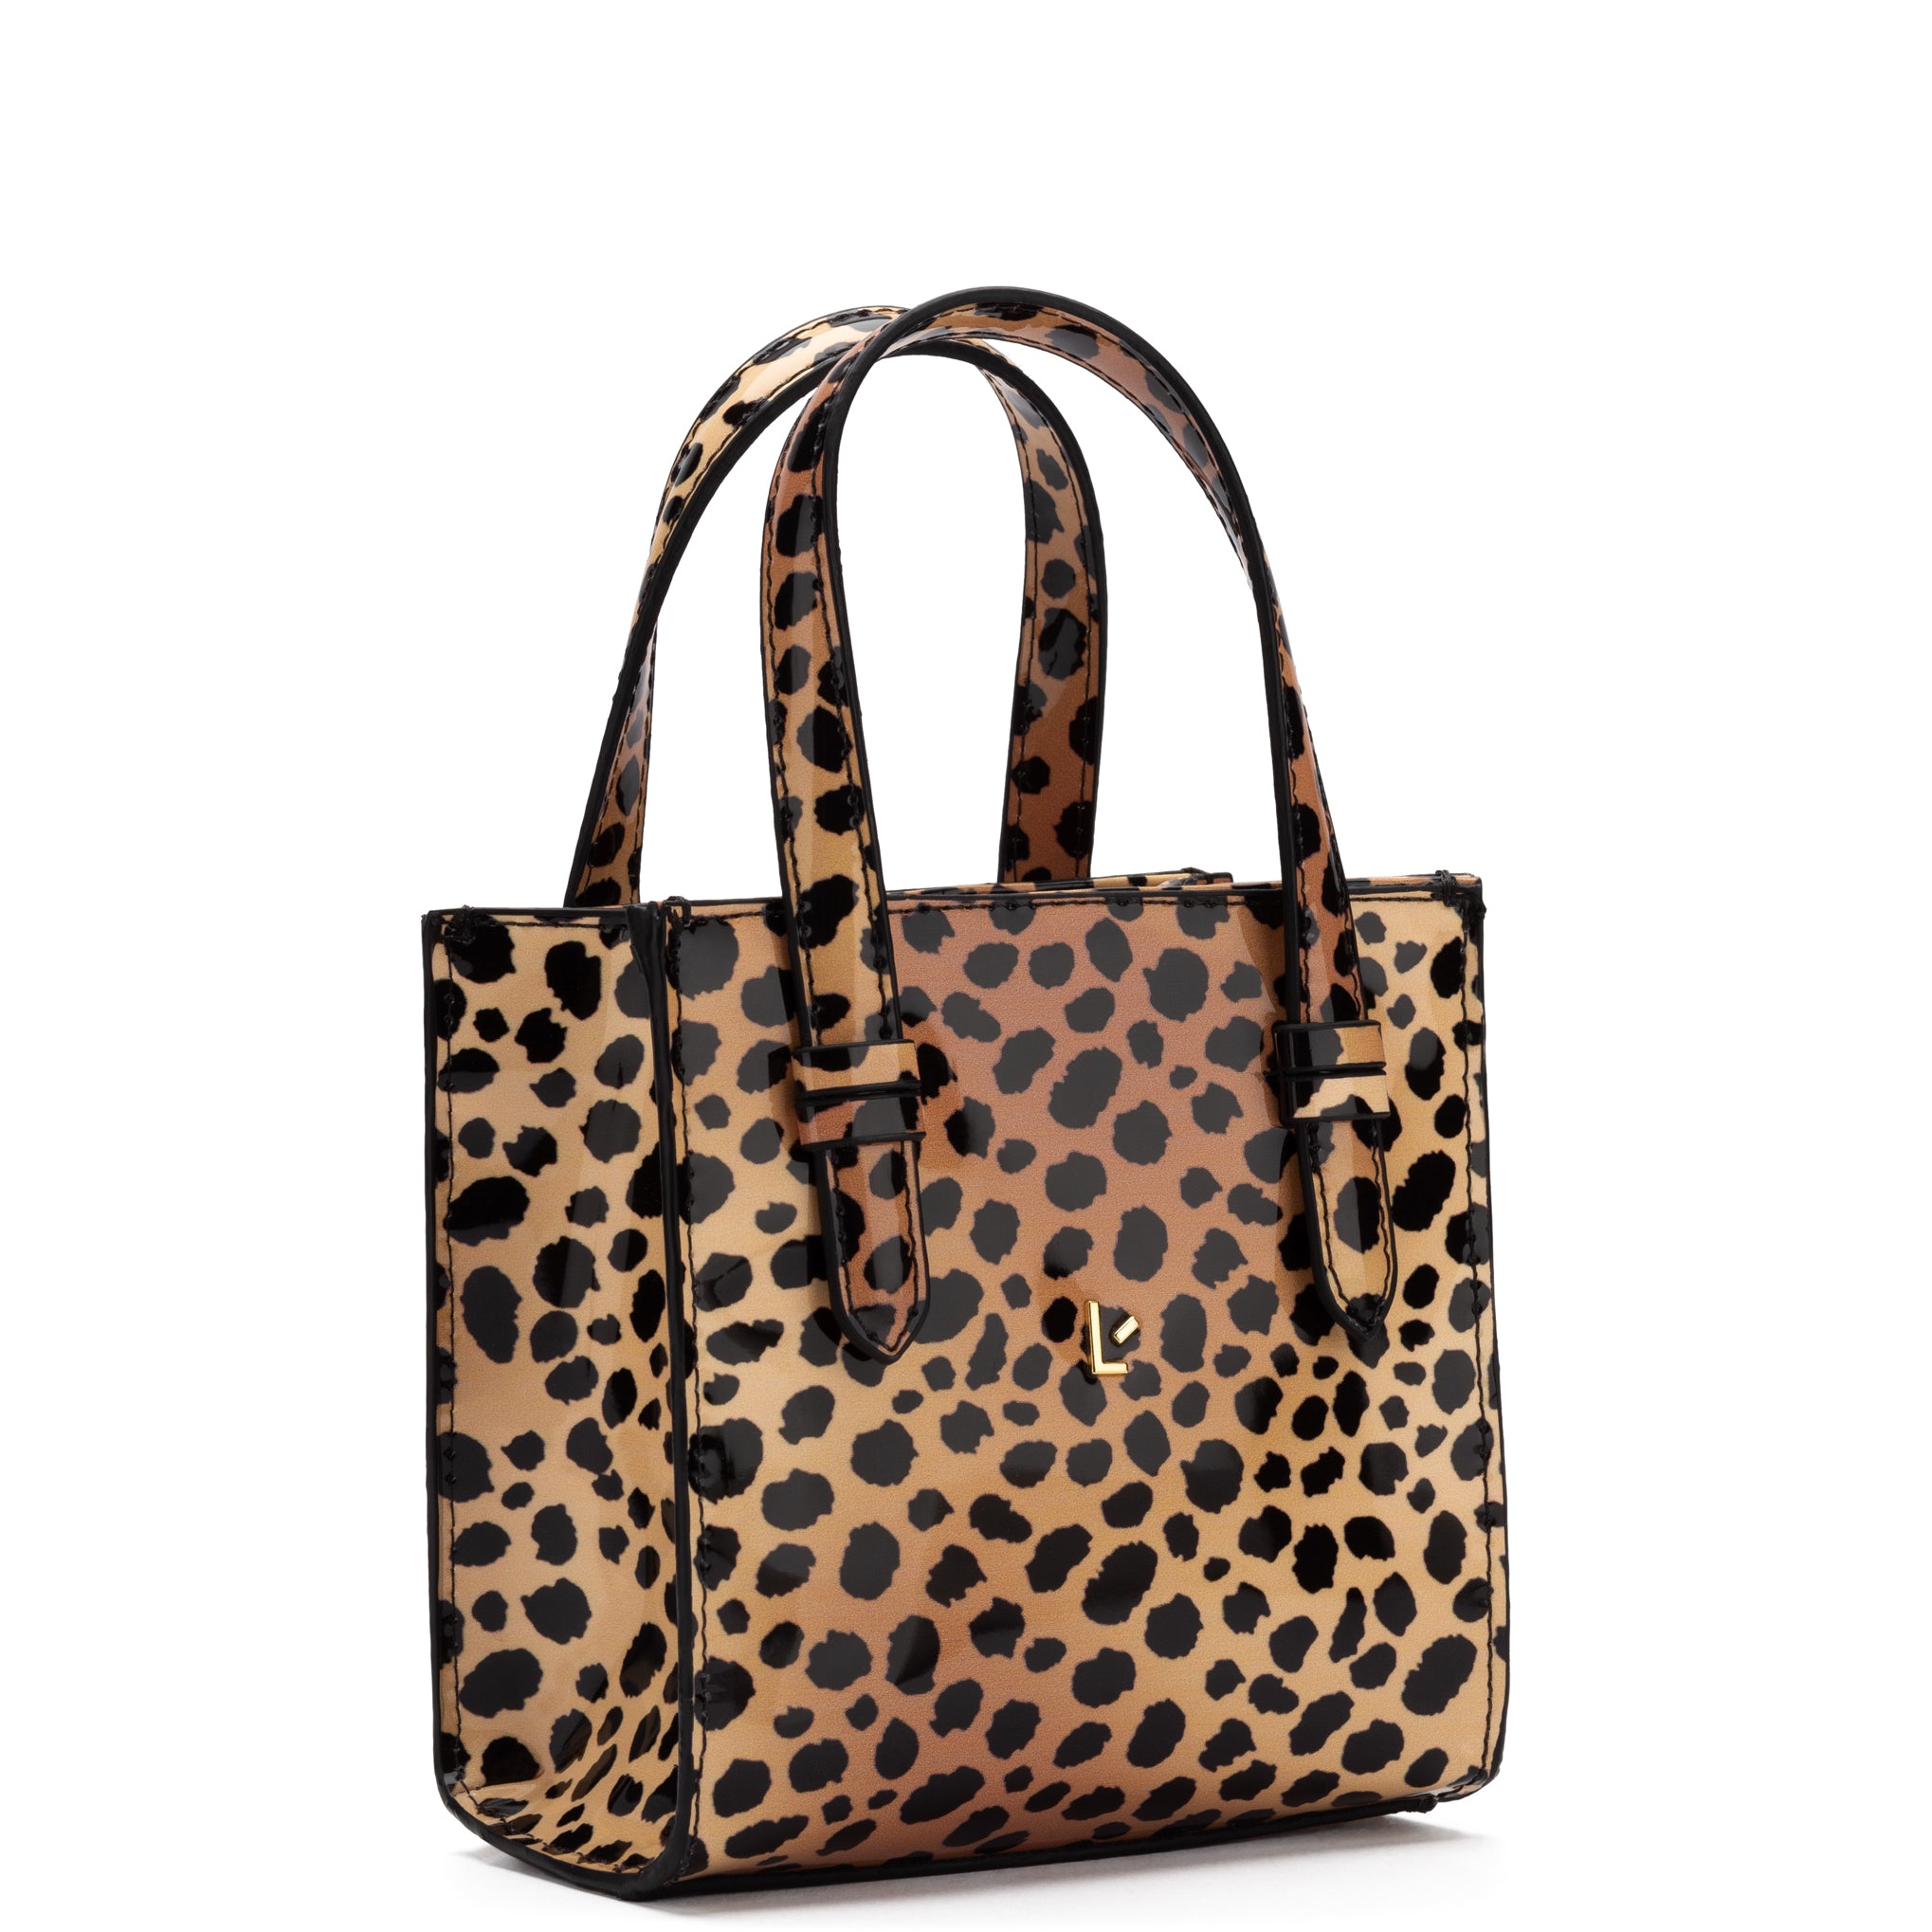 Larroudé Mini Phoebe Tote Bag in Cheetah Print Vegan Patent Leather U